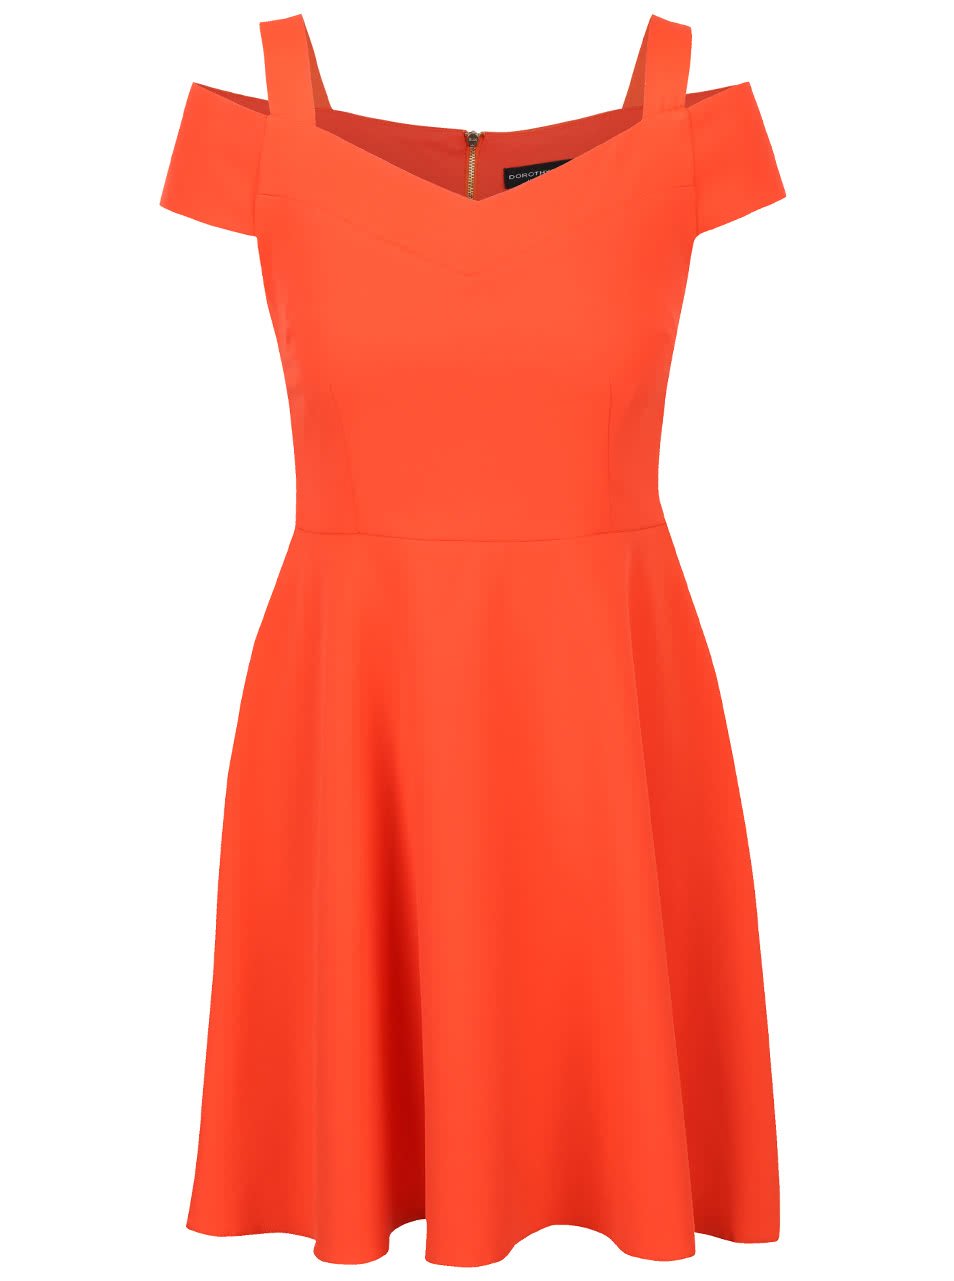 Oranžové šaty s průstřihy na ramenou Dorothy Perkins